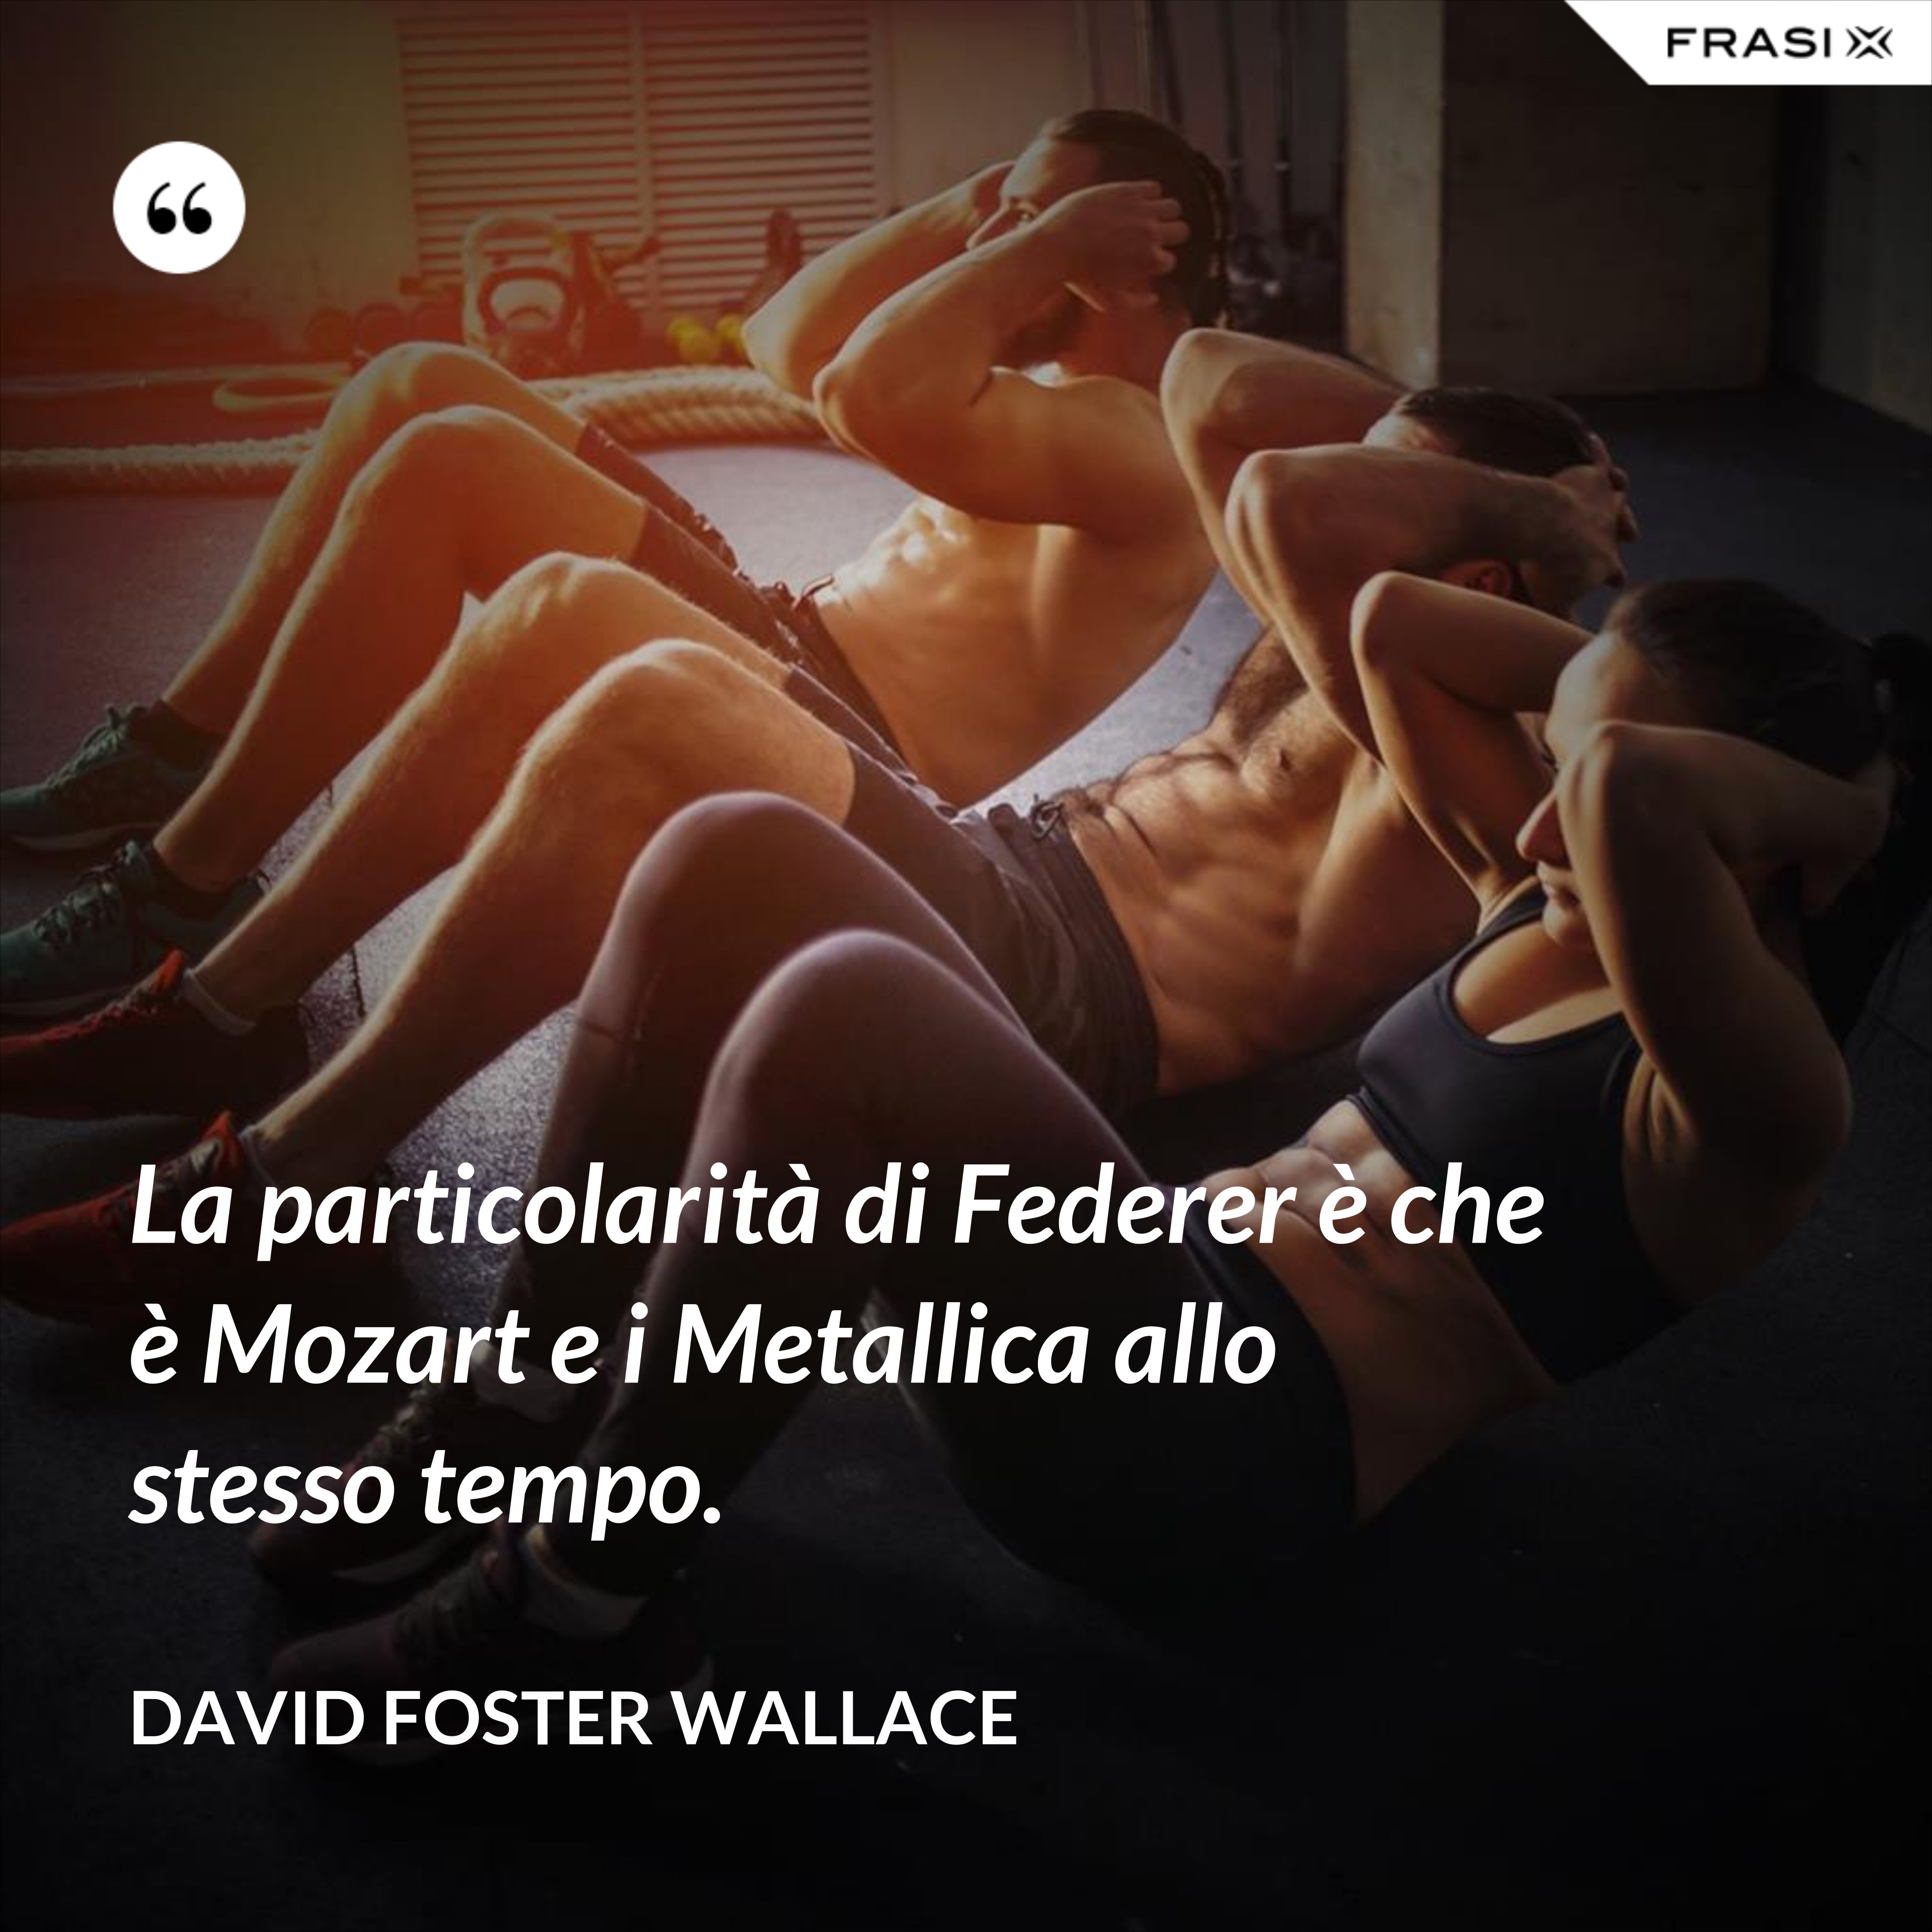 La particolarità di Federer è che è Mozart e i Metallica allo stesso tempo. - David Foster Wallace